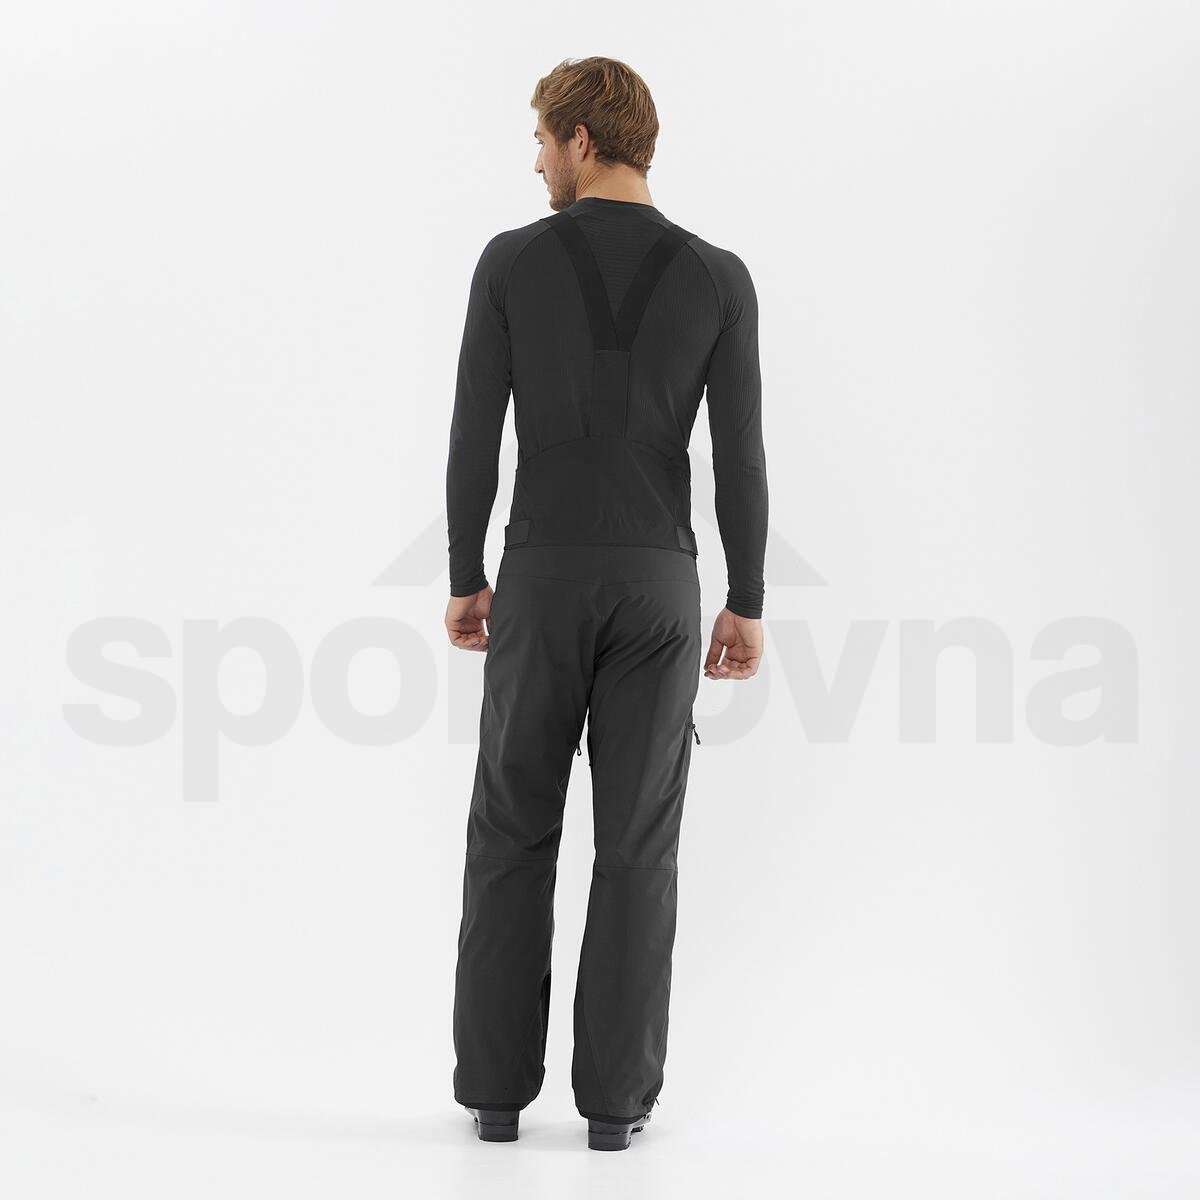 Kalhoty Salomon Brilliant Suspenders M - černá (standardní délka)